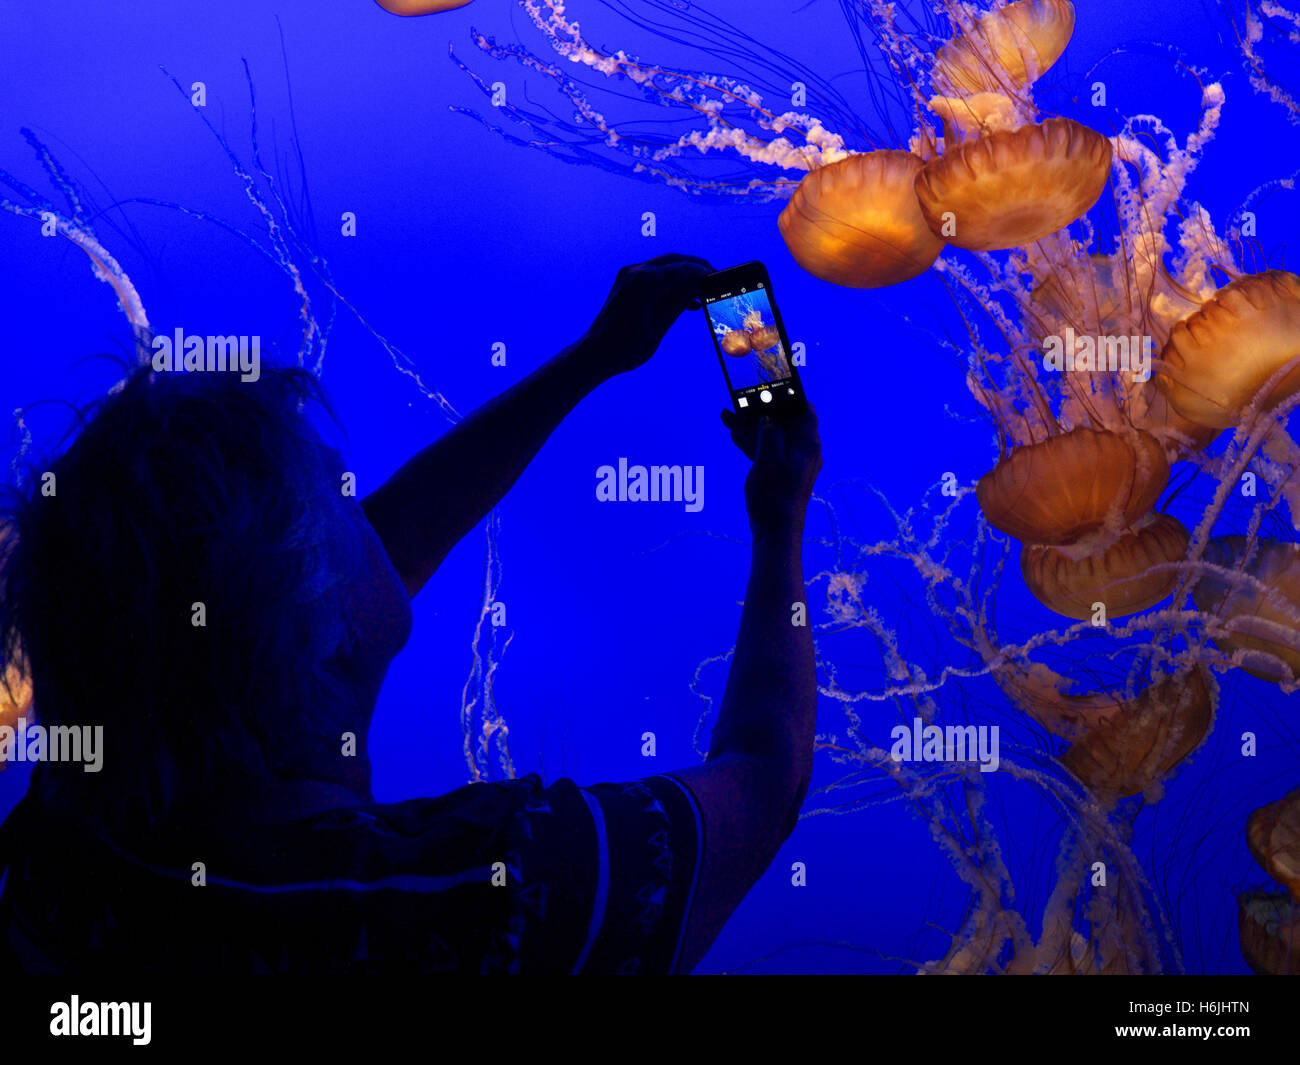 Donna che mantiene Apple iPhone 5s la registrazione dello smartphone immagine di Medusa di Monterey Bay Aquarium Monterey California USA Foto Stock